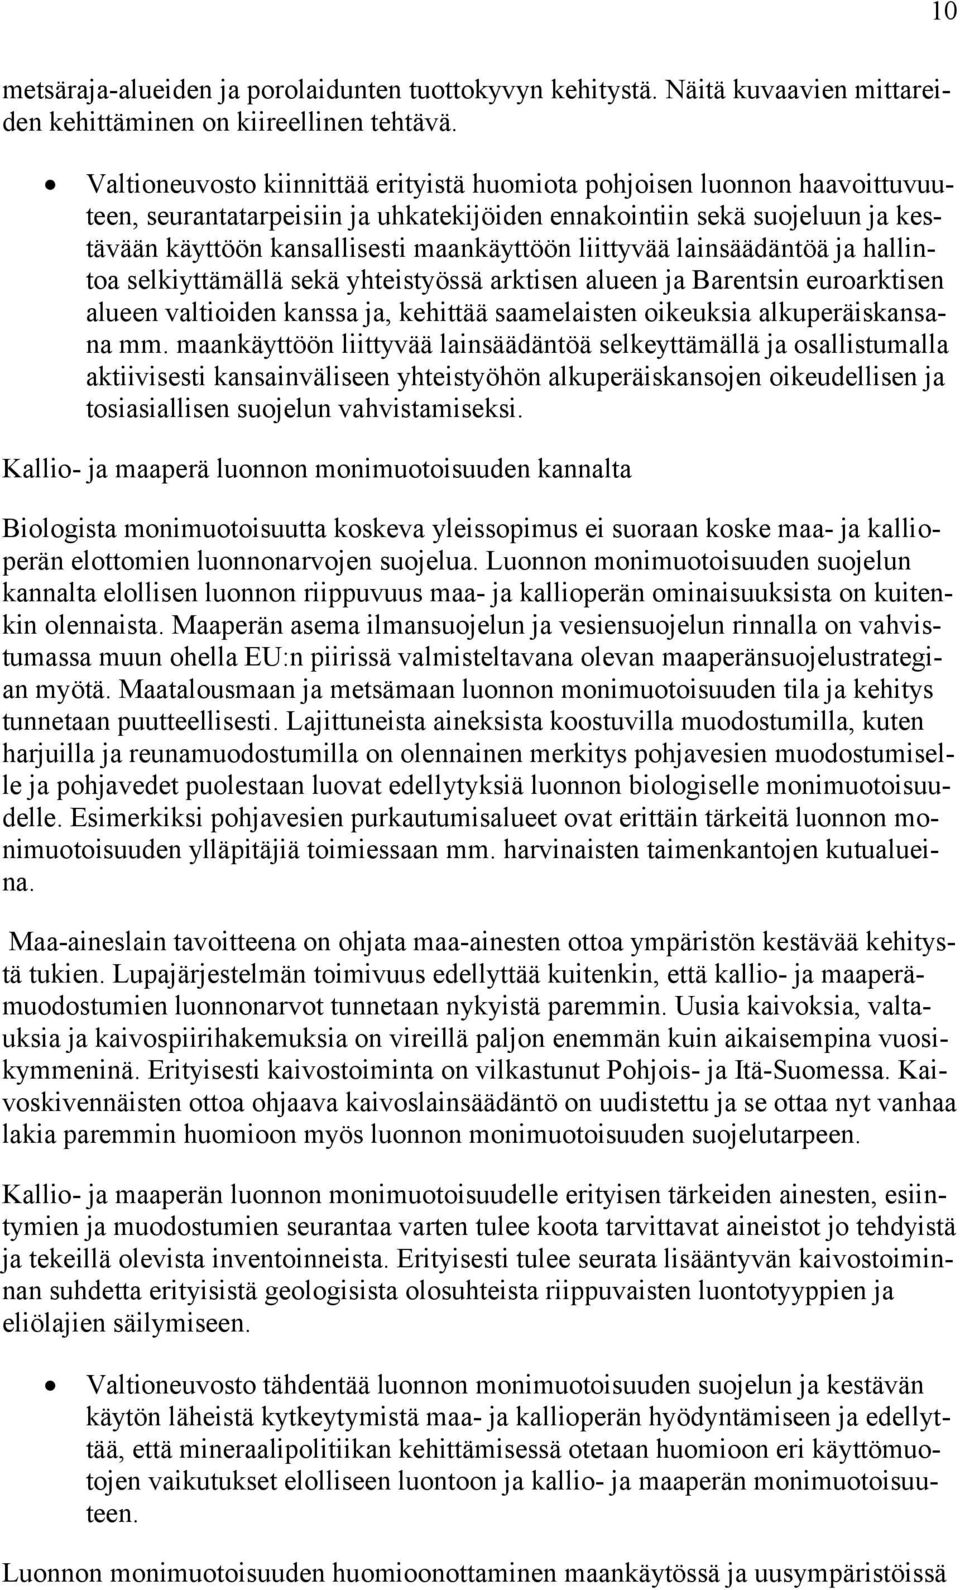 liittyvää lainsäädäntöä ja hallintoa selkiyttämällä sekä yhteistyössä arktisen alueen ja Barentsin euroarktisen alueen valtioiden kanssa ja, kehittää saamelaisten oikeuksia alkuperäiskansana mm.